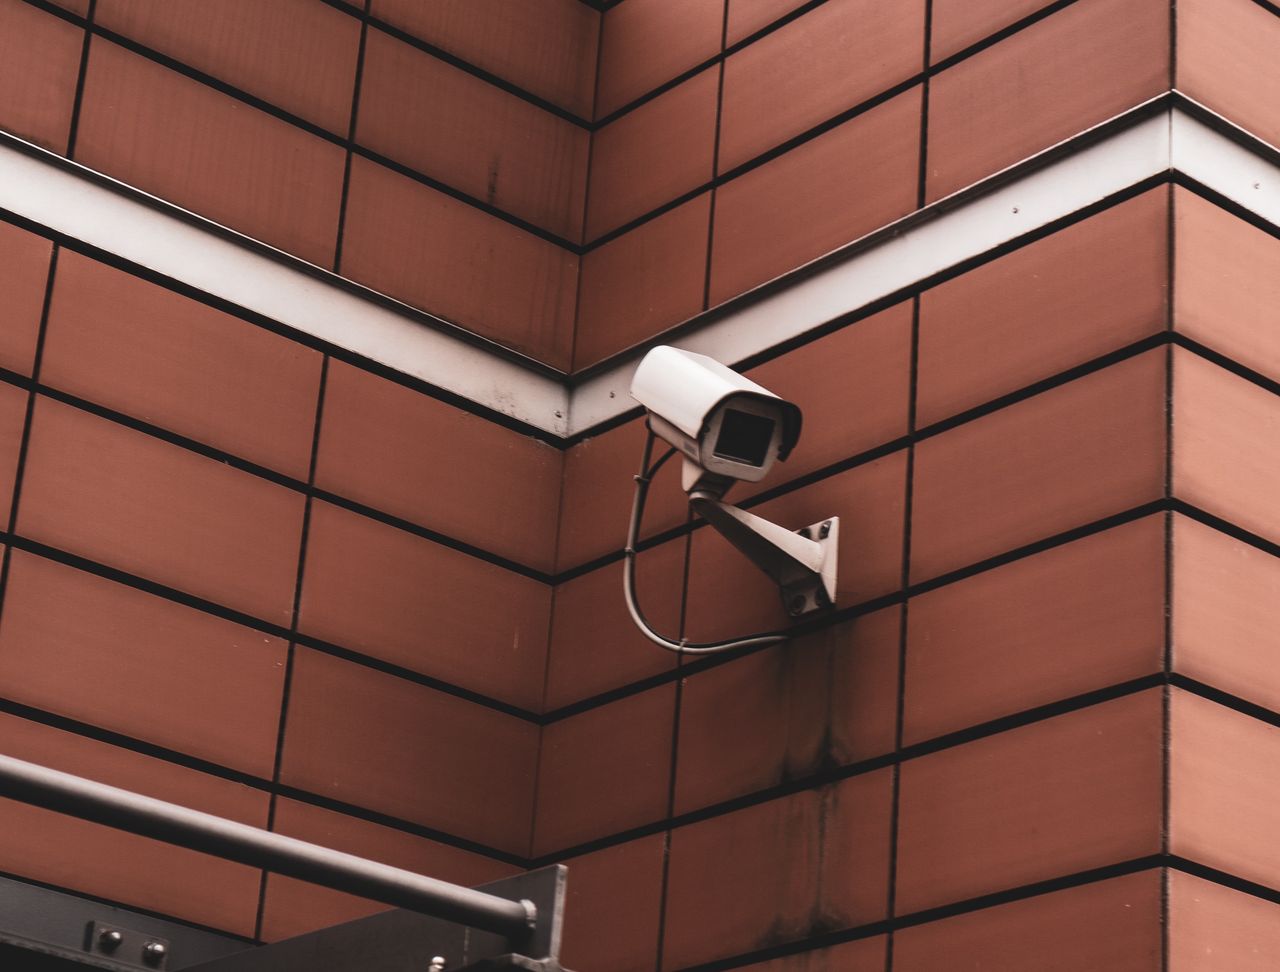 Kamera CCTV, monitoring